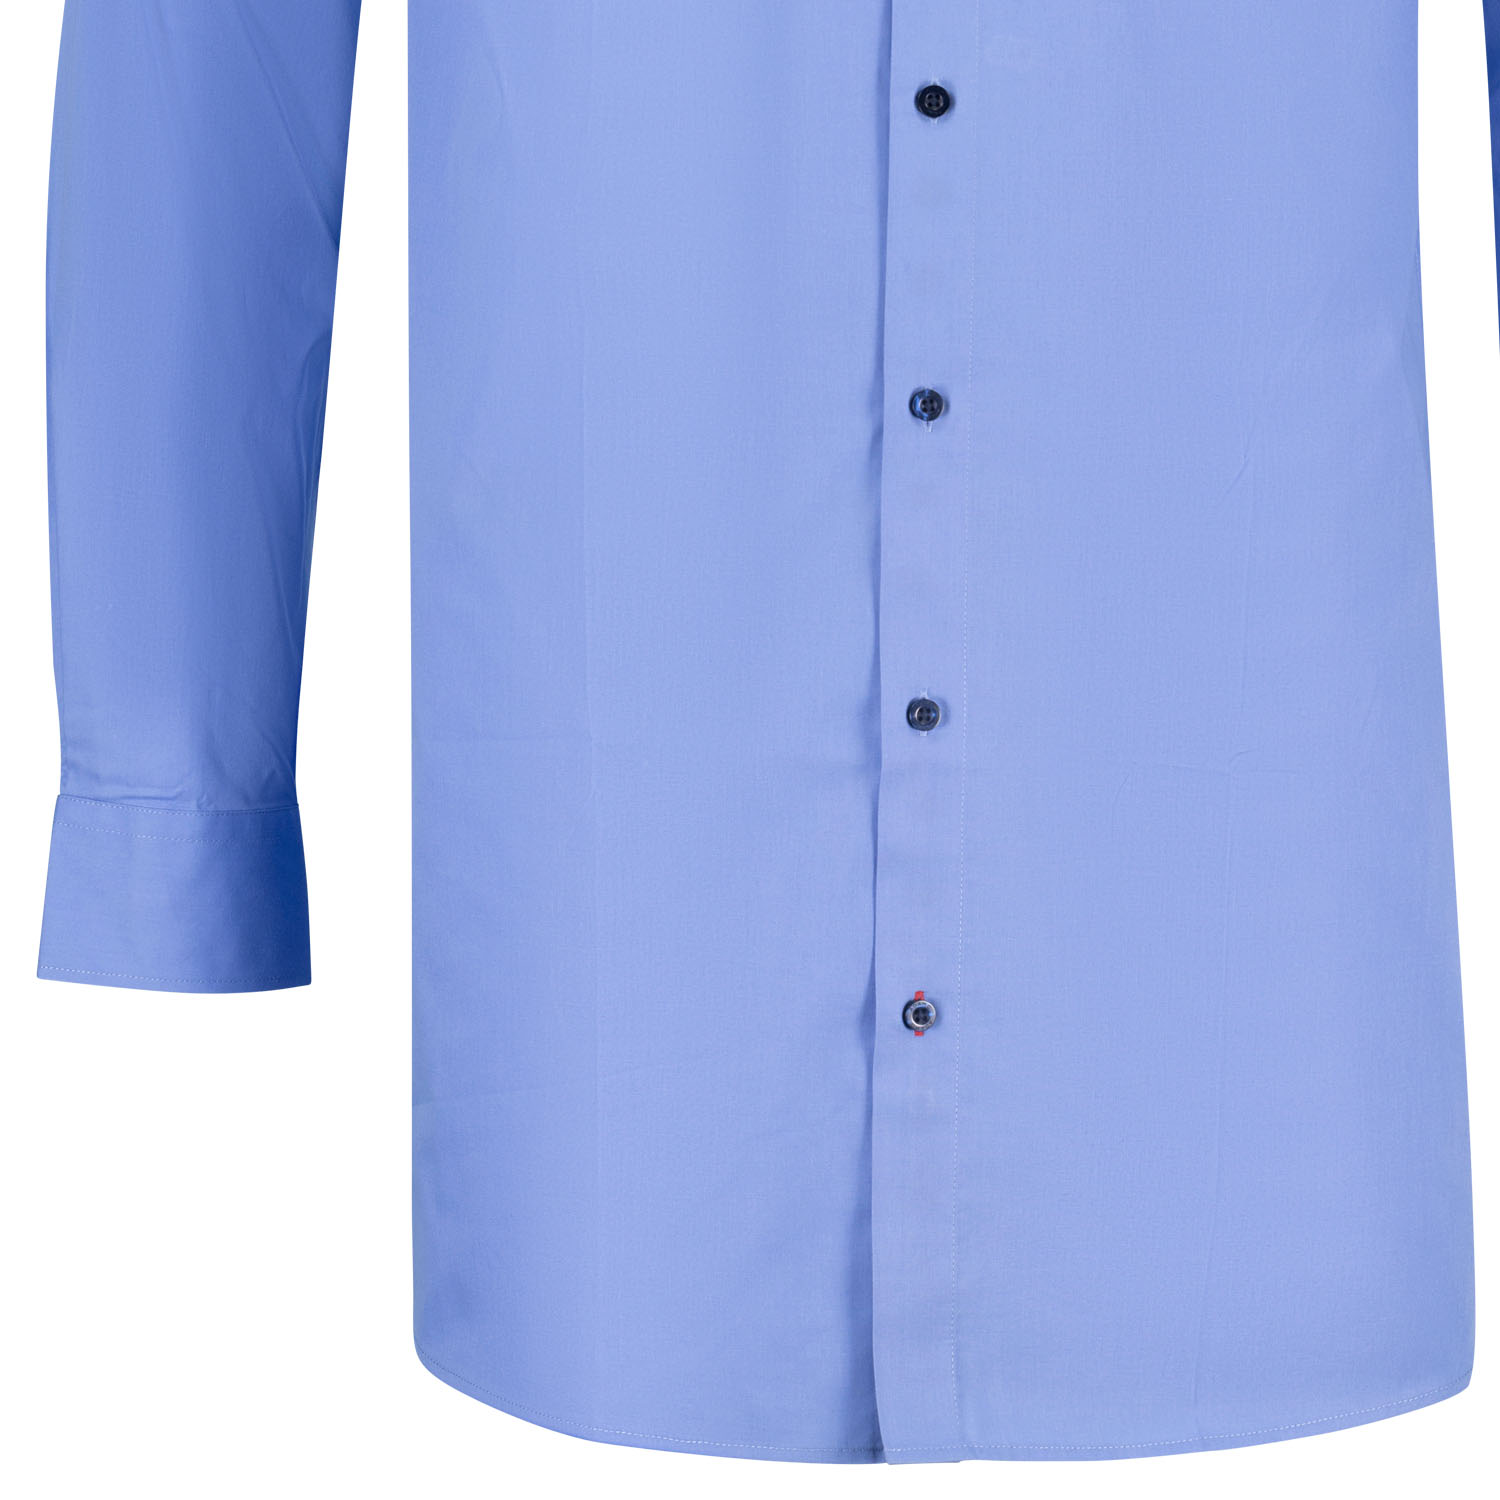 Long sleeve mens Business Shirt medium blue Comfort Fit series JOHN by ADAMO up to oversize 10XL